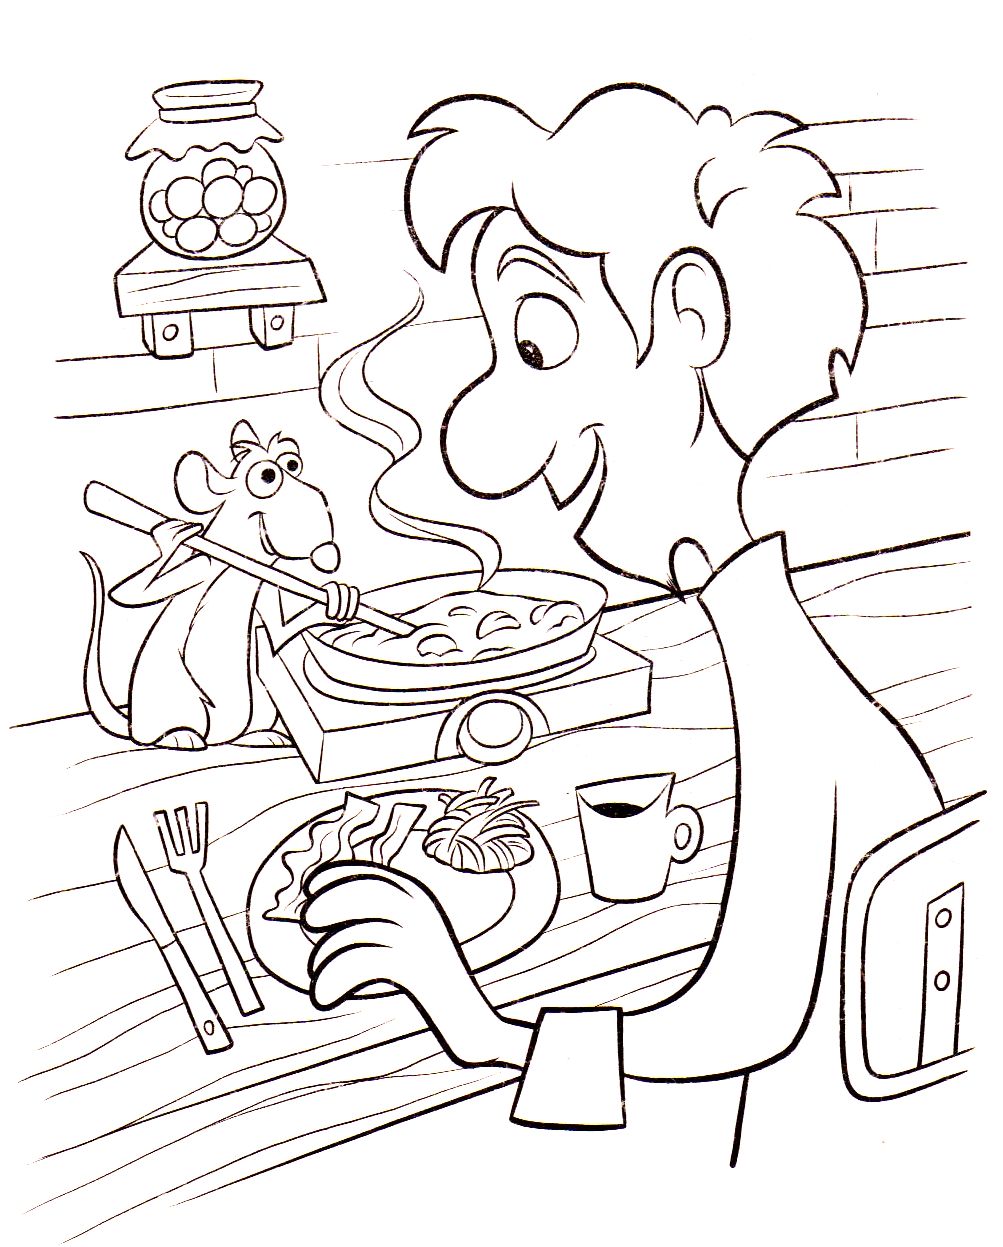 Un bon repas mijoté par Linguini et son ami le rat Rémy